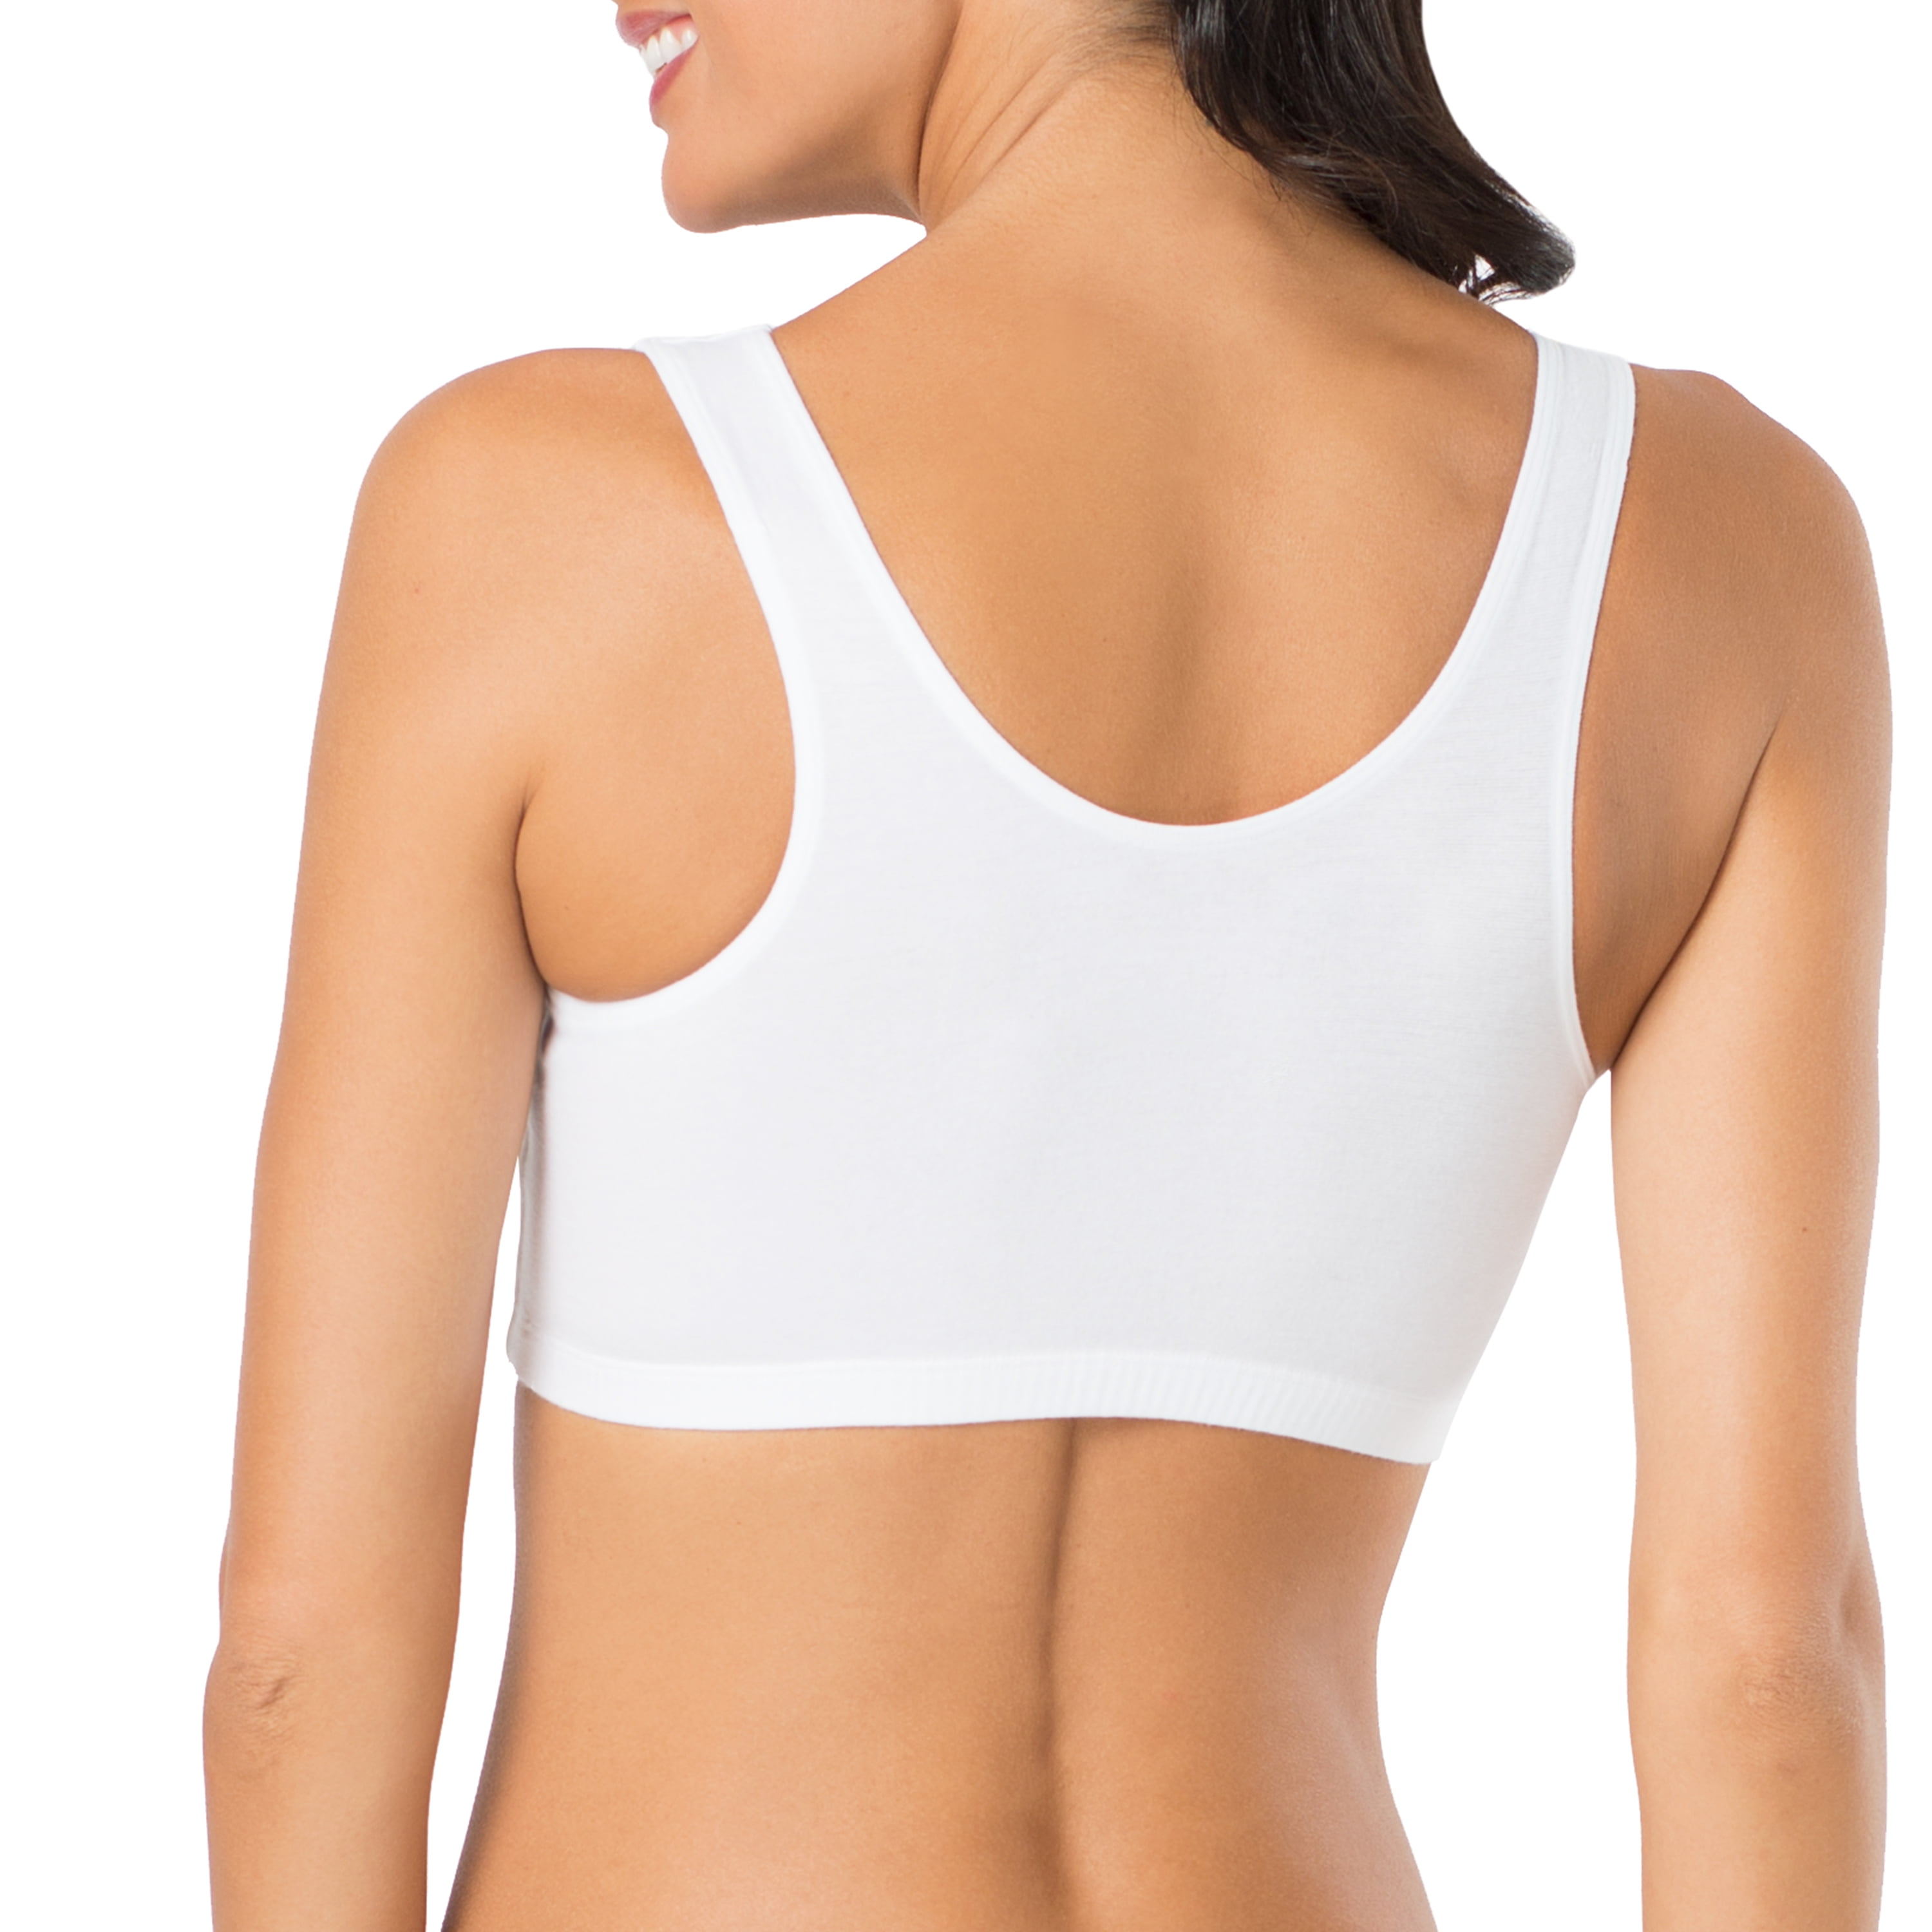 RIYANSH sports bra for women combo pack, decathlon sports bra for